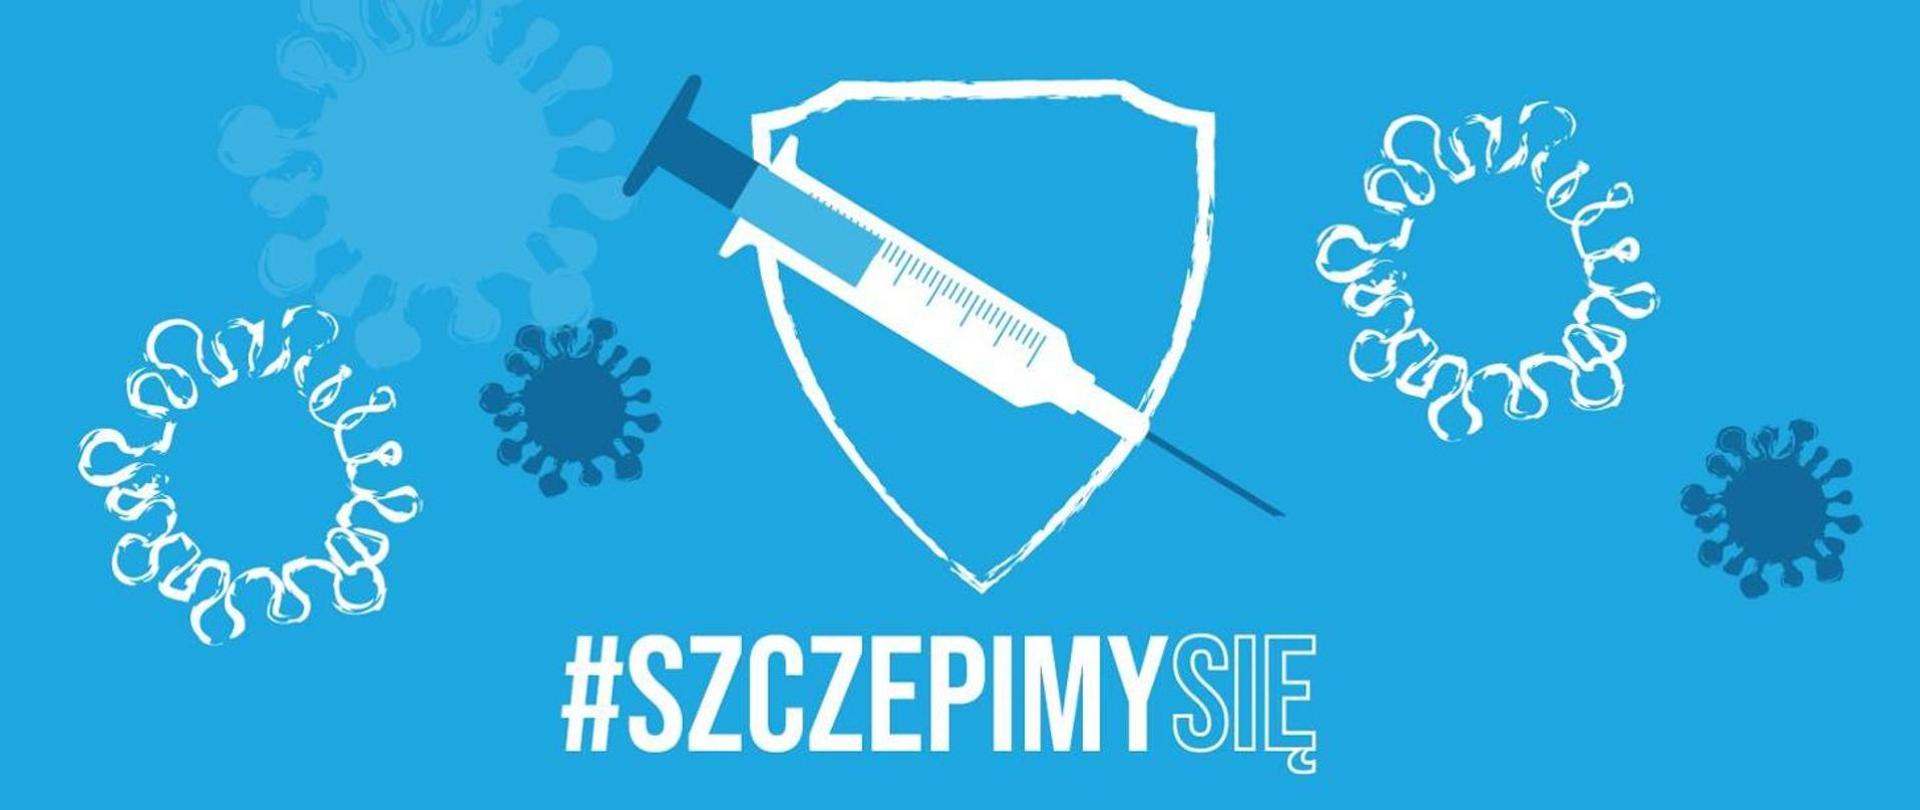 Zdjęcie przedstawia plakat kampanii szczepienie przeciwko COVID-19: strzykawkę z igłą a wokół wirusy.